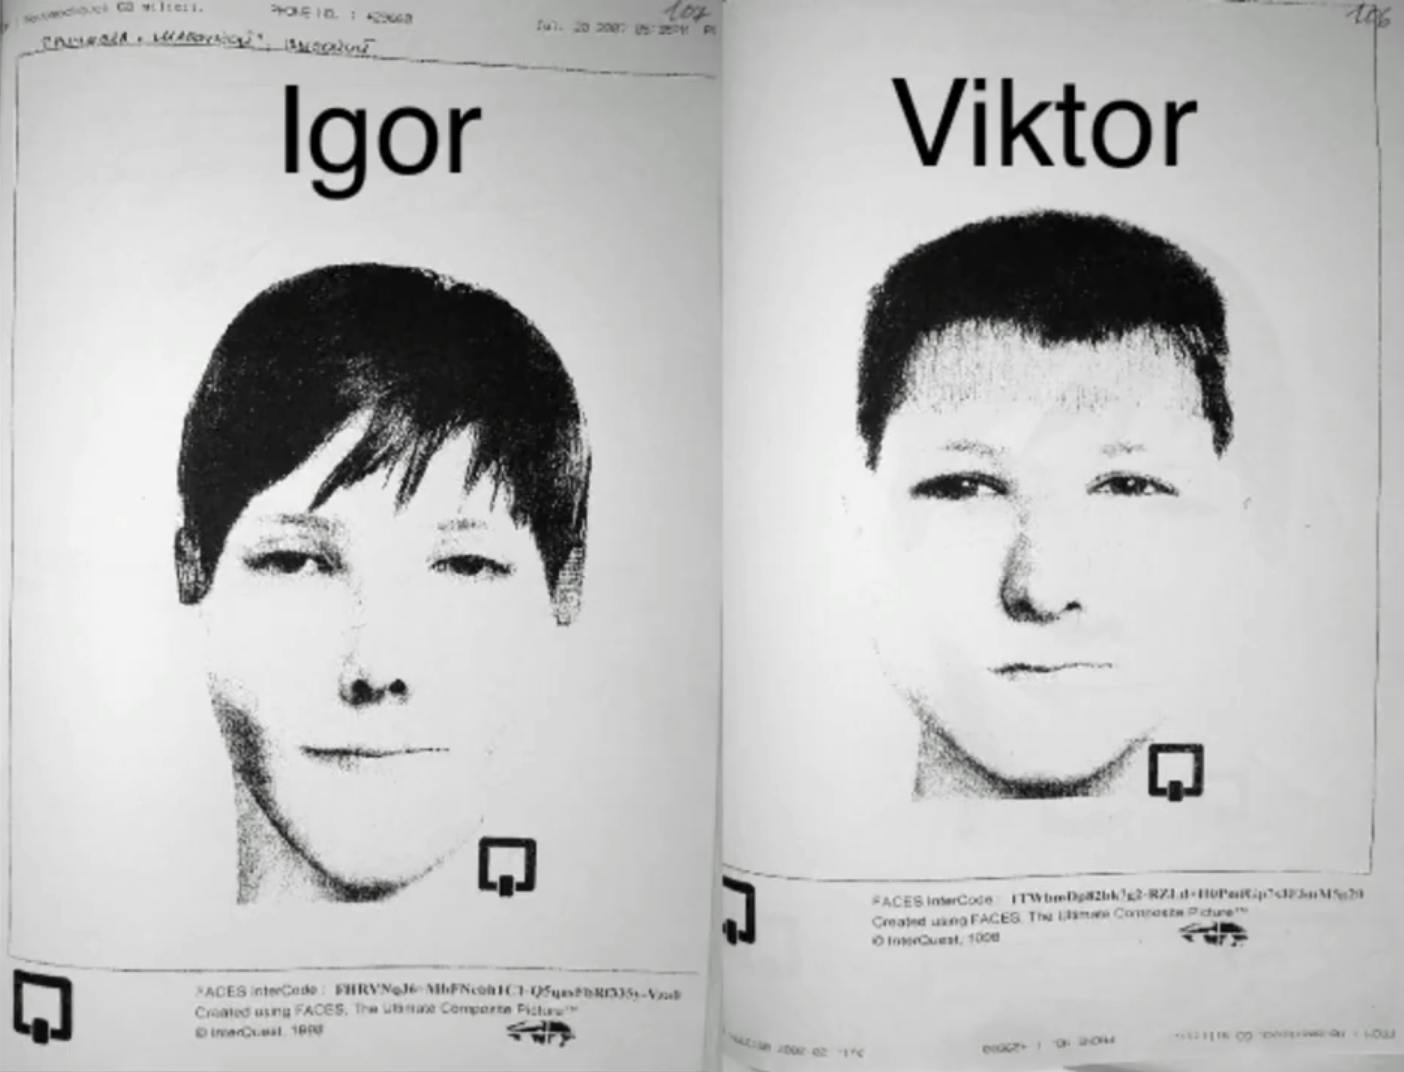 Fantomtegningerne af Igor og Viktor, baseret på Vadims beskrivelser.